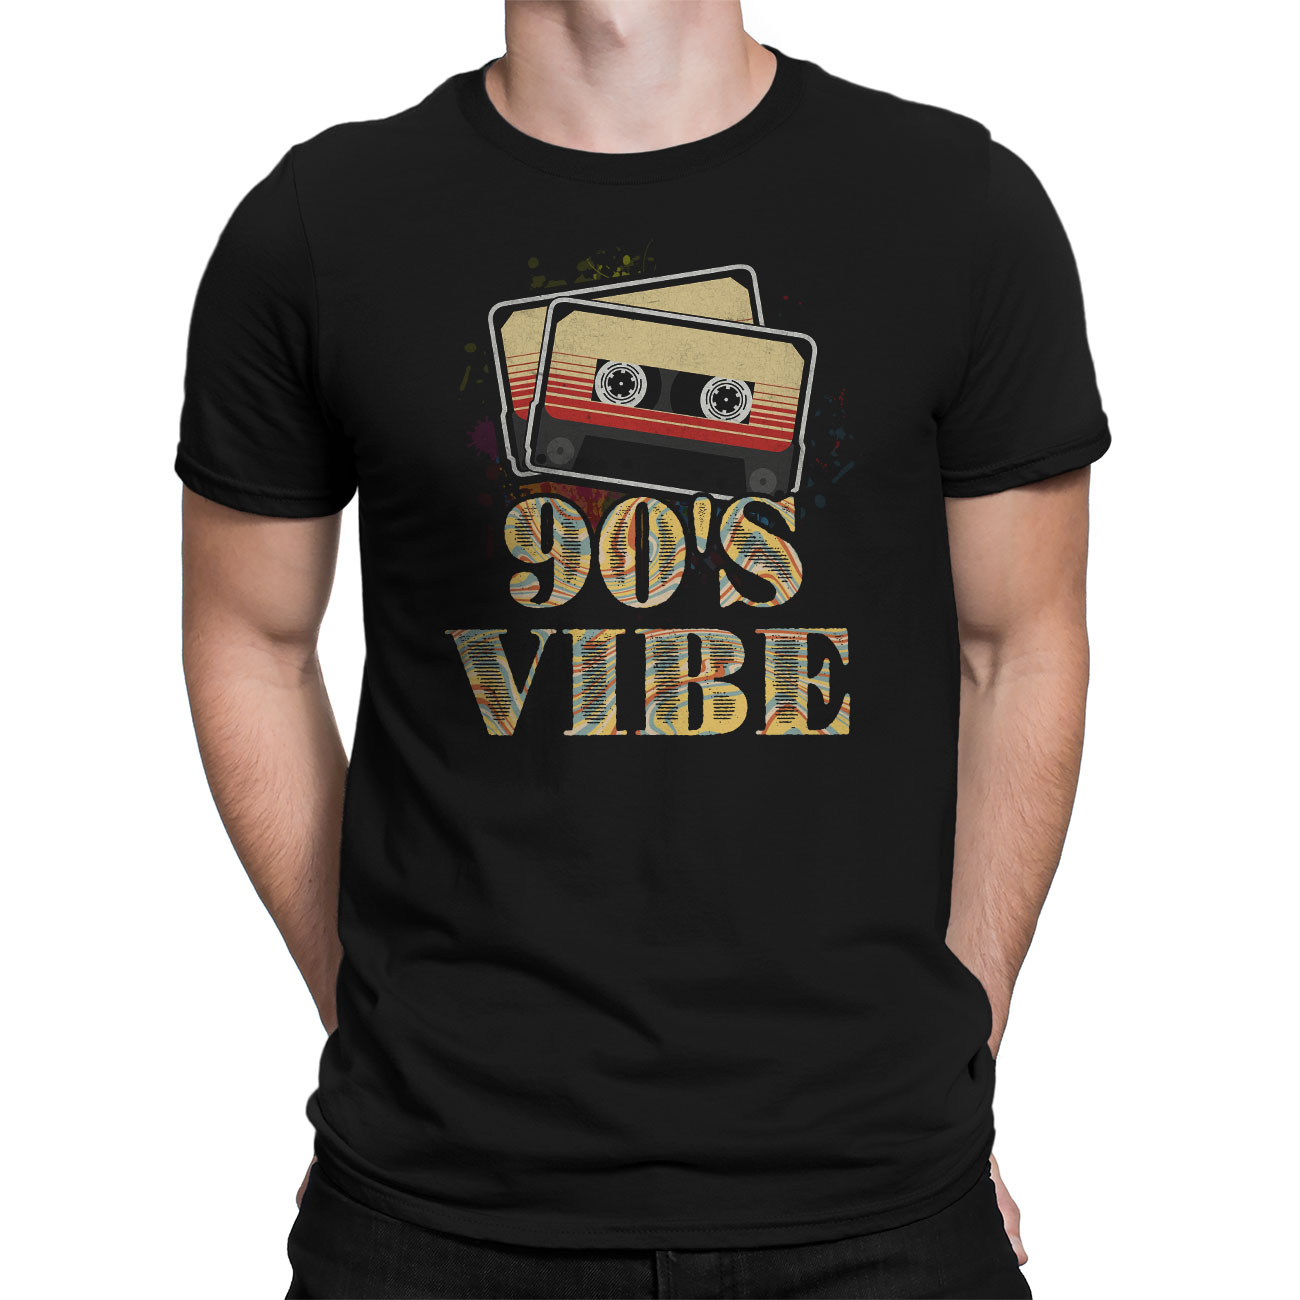 retro 90's t shirts